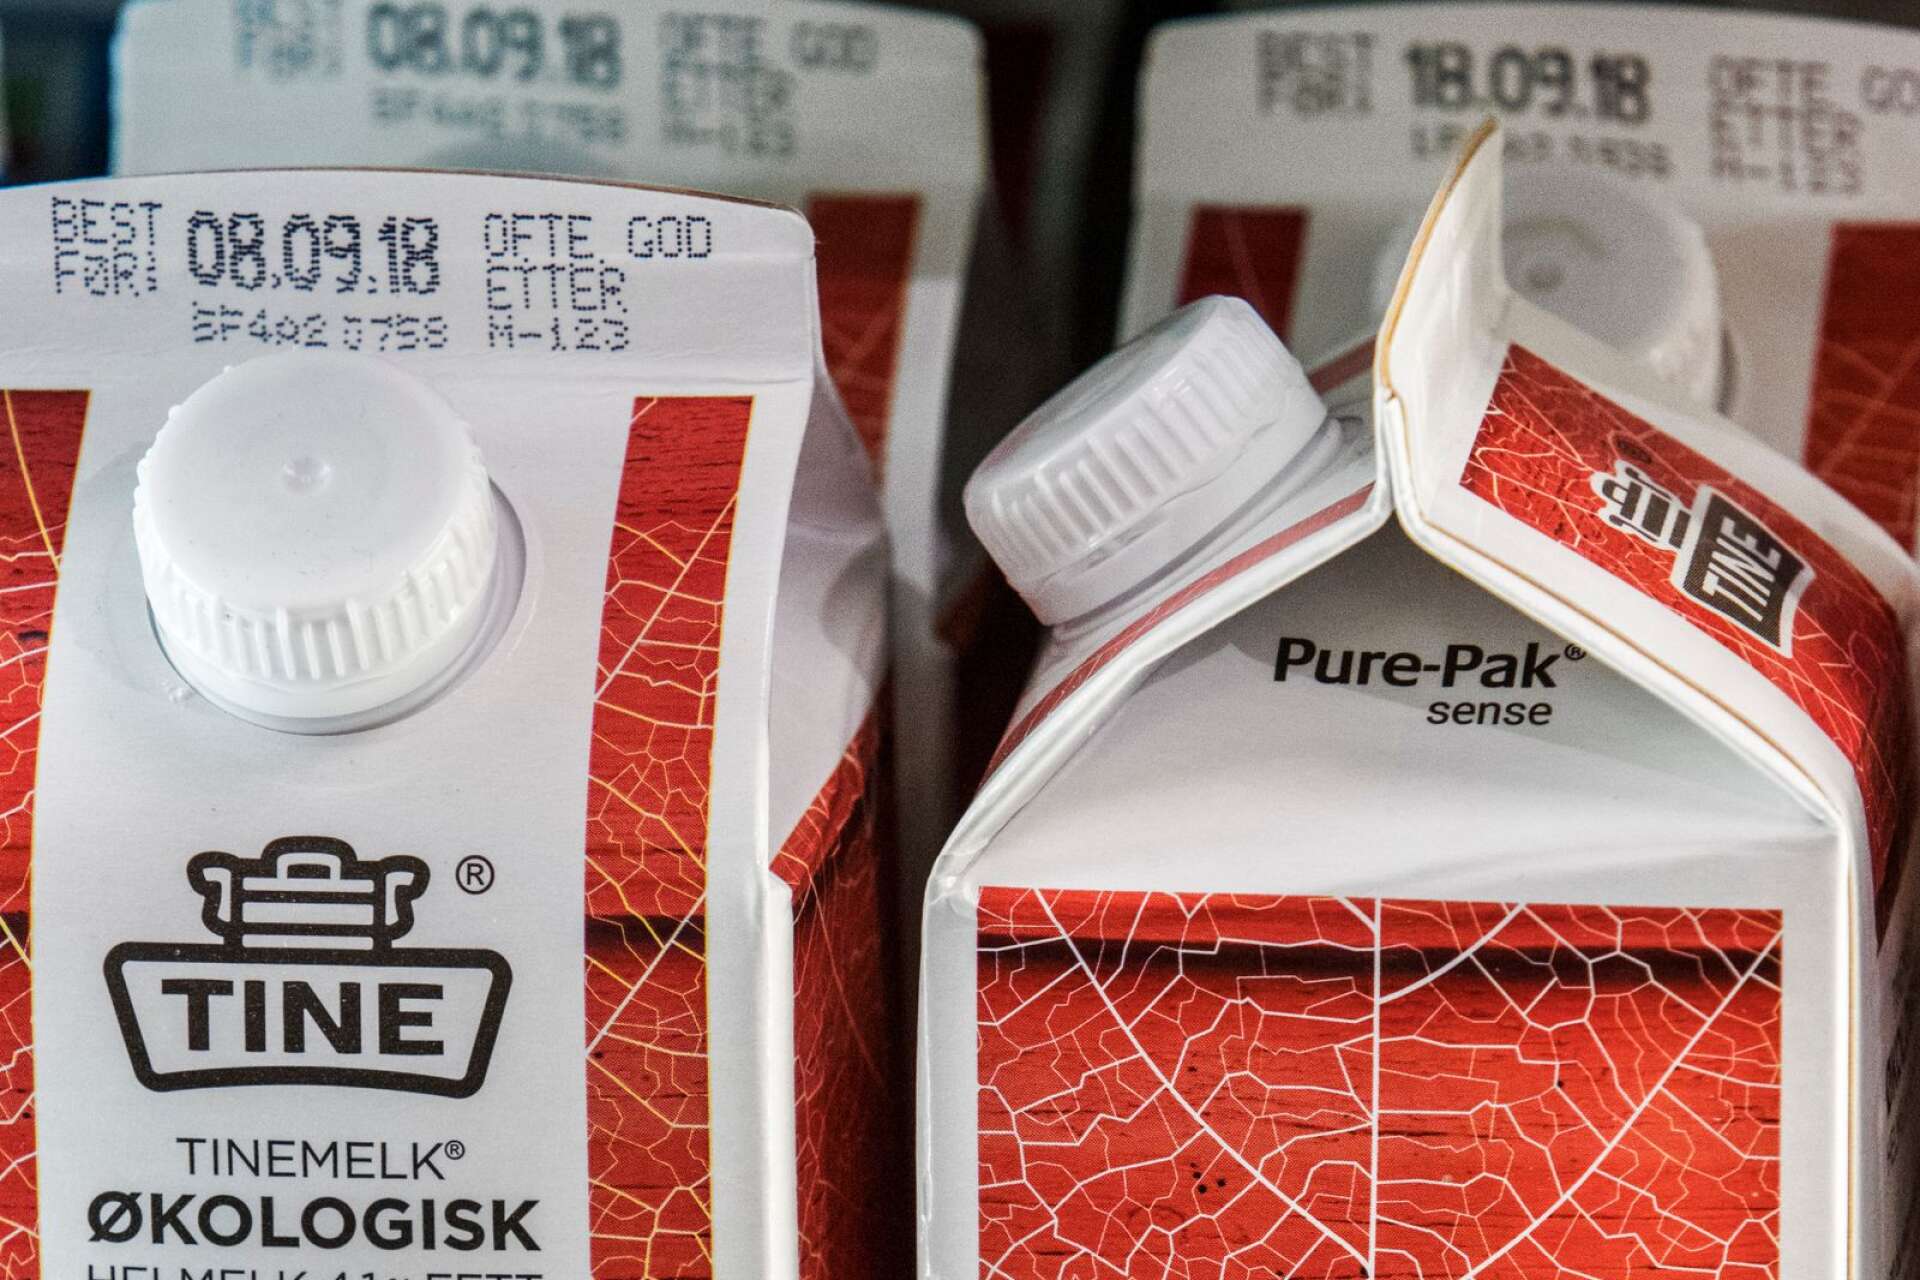 Helén Williams tar den norska mejeribranschens initiativ att skriva tydligt på paketen att mjölken ofta är bra efter datummärkningen som ett bra exempel på försök att minska matsvinnet.